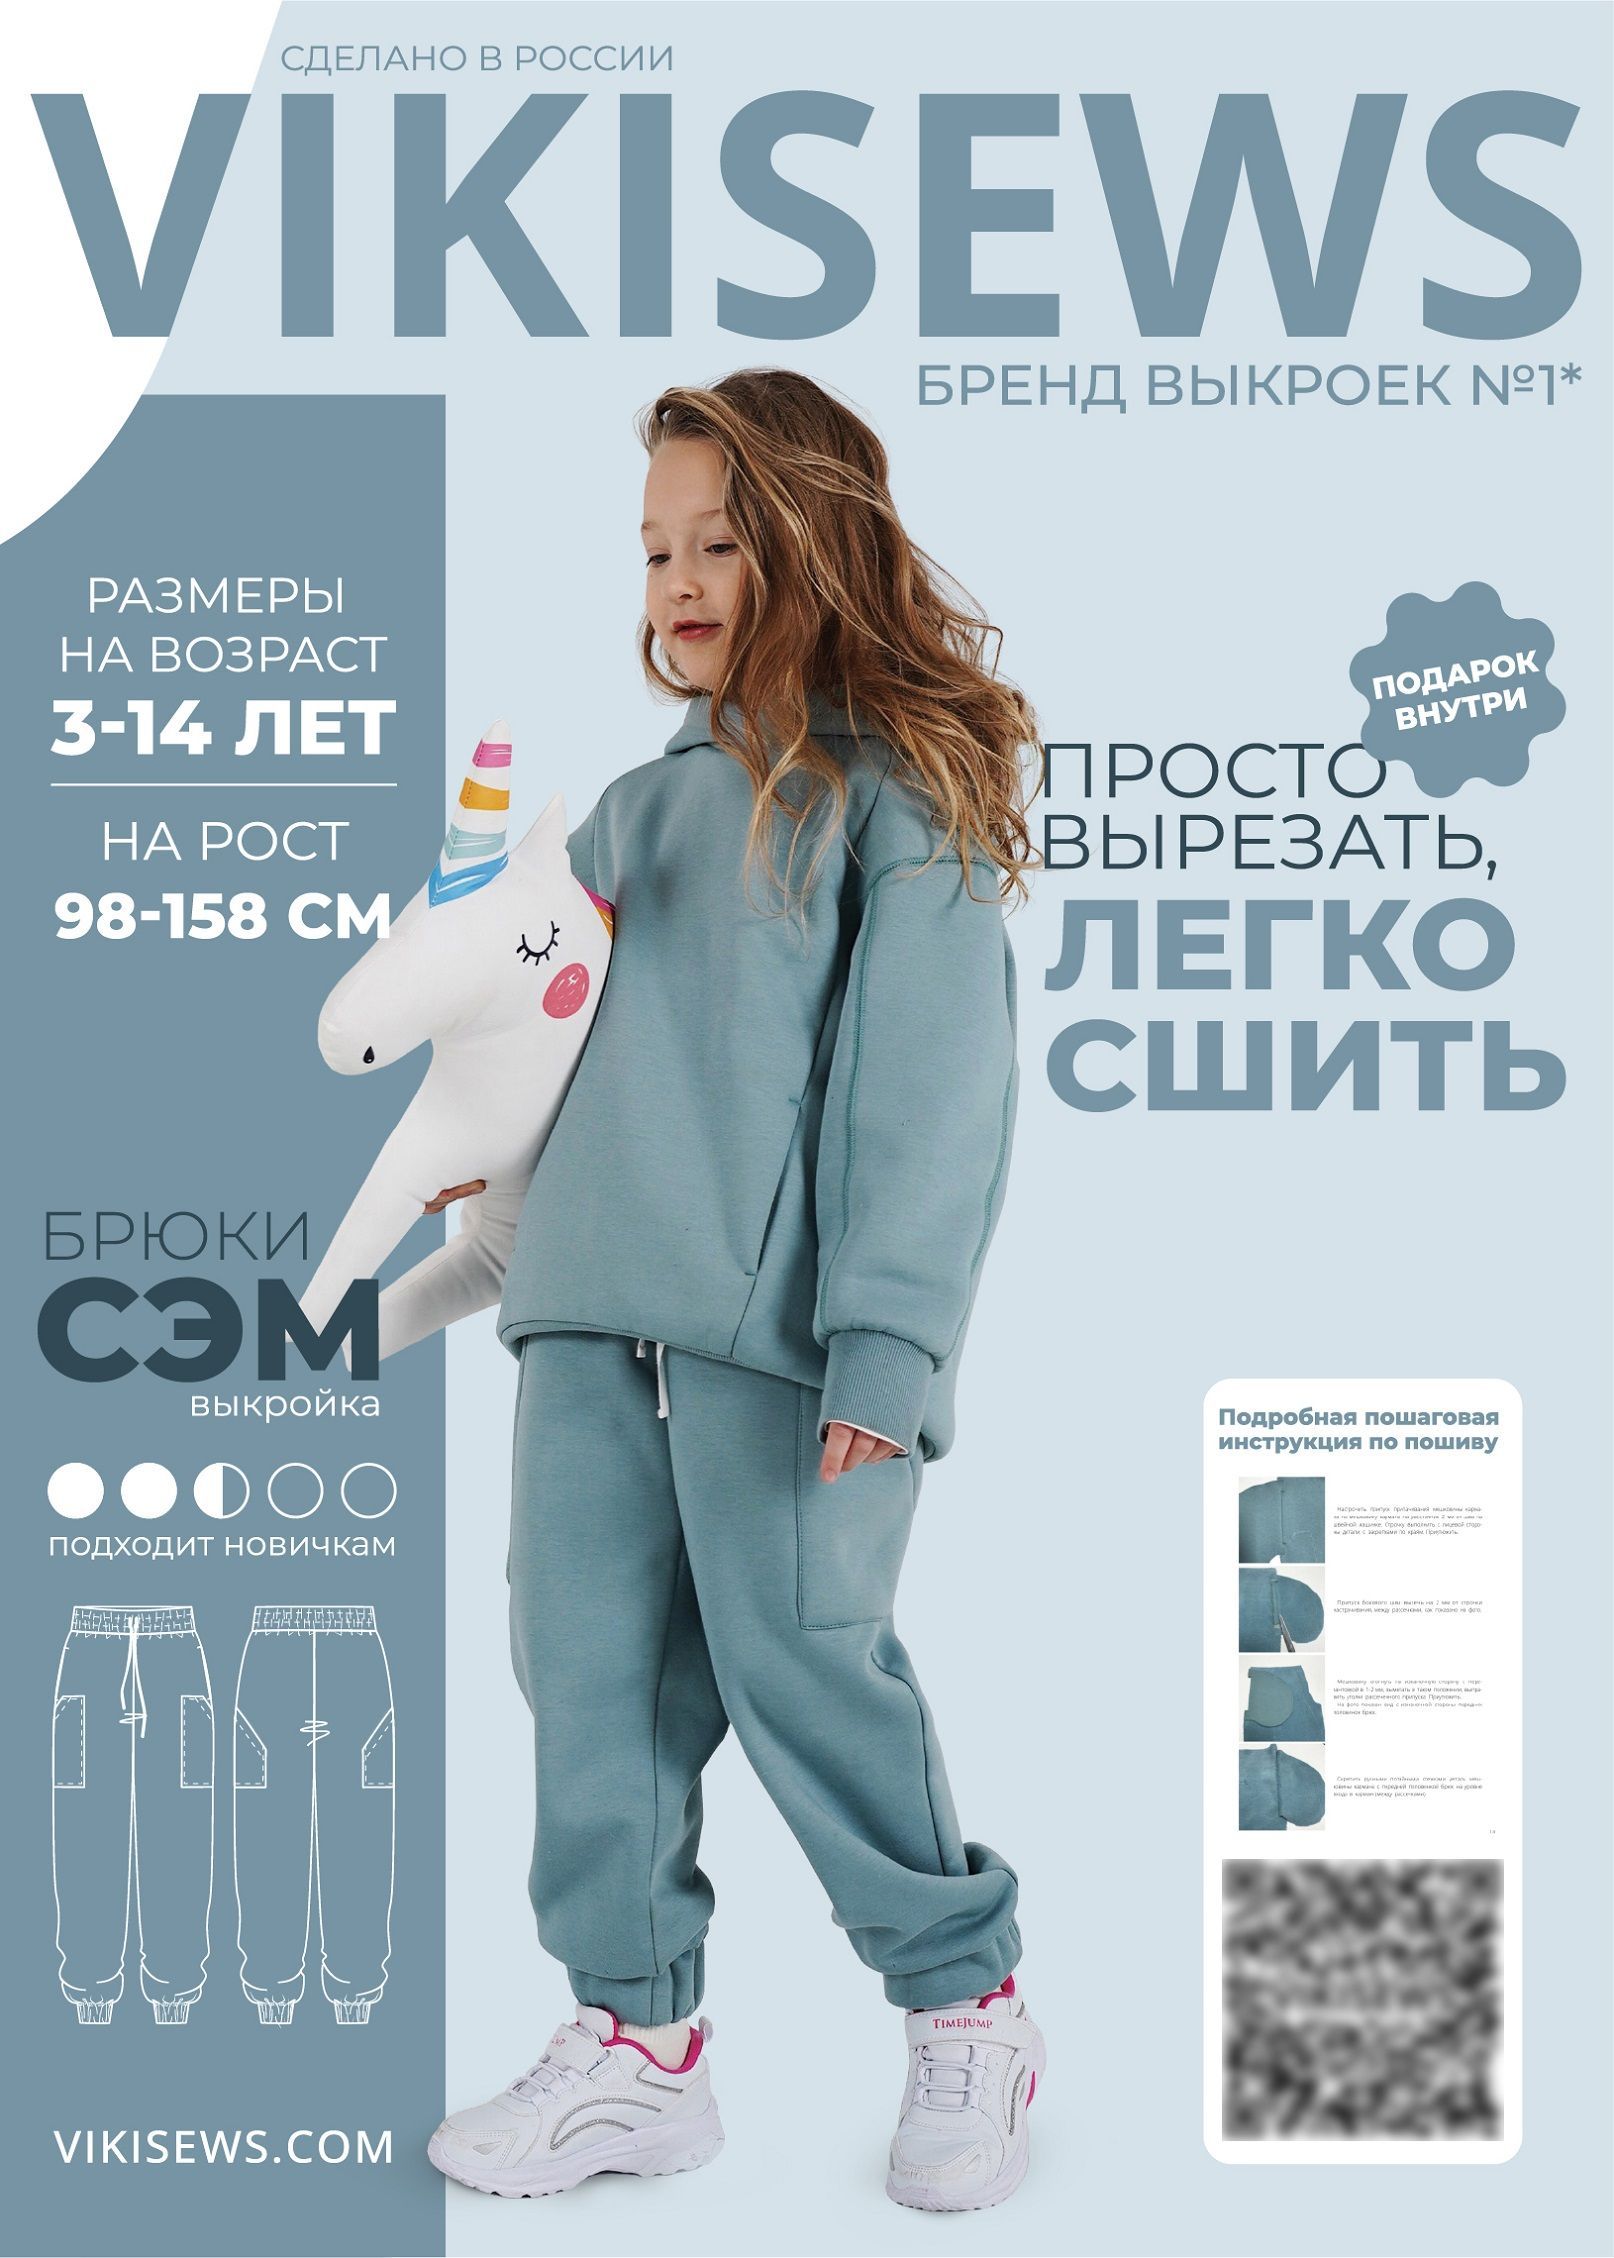 Выкройки брюк трикотажных от Burda – купить и скачать на internat-mednogorsk.ru